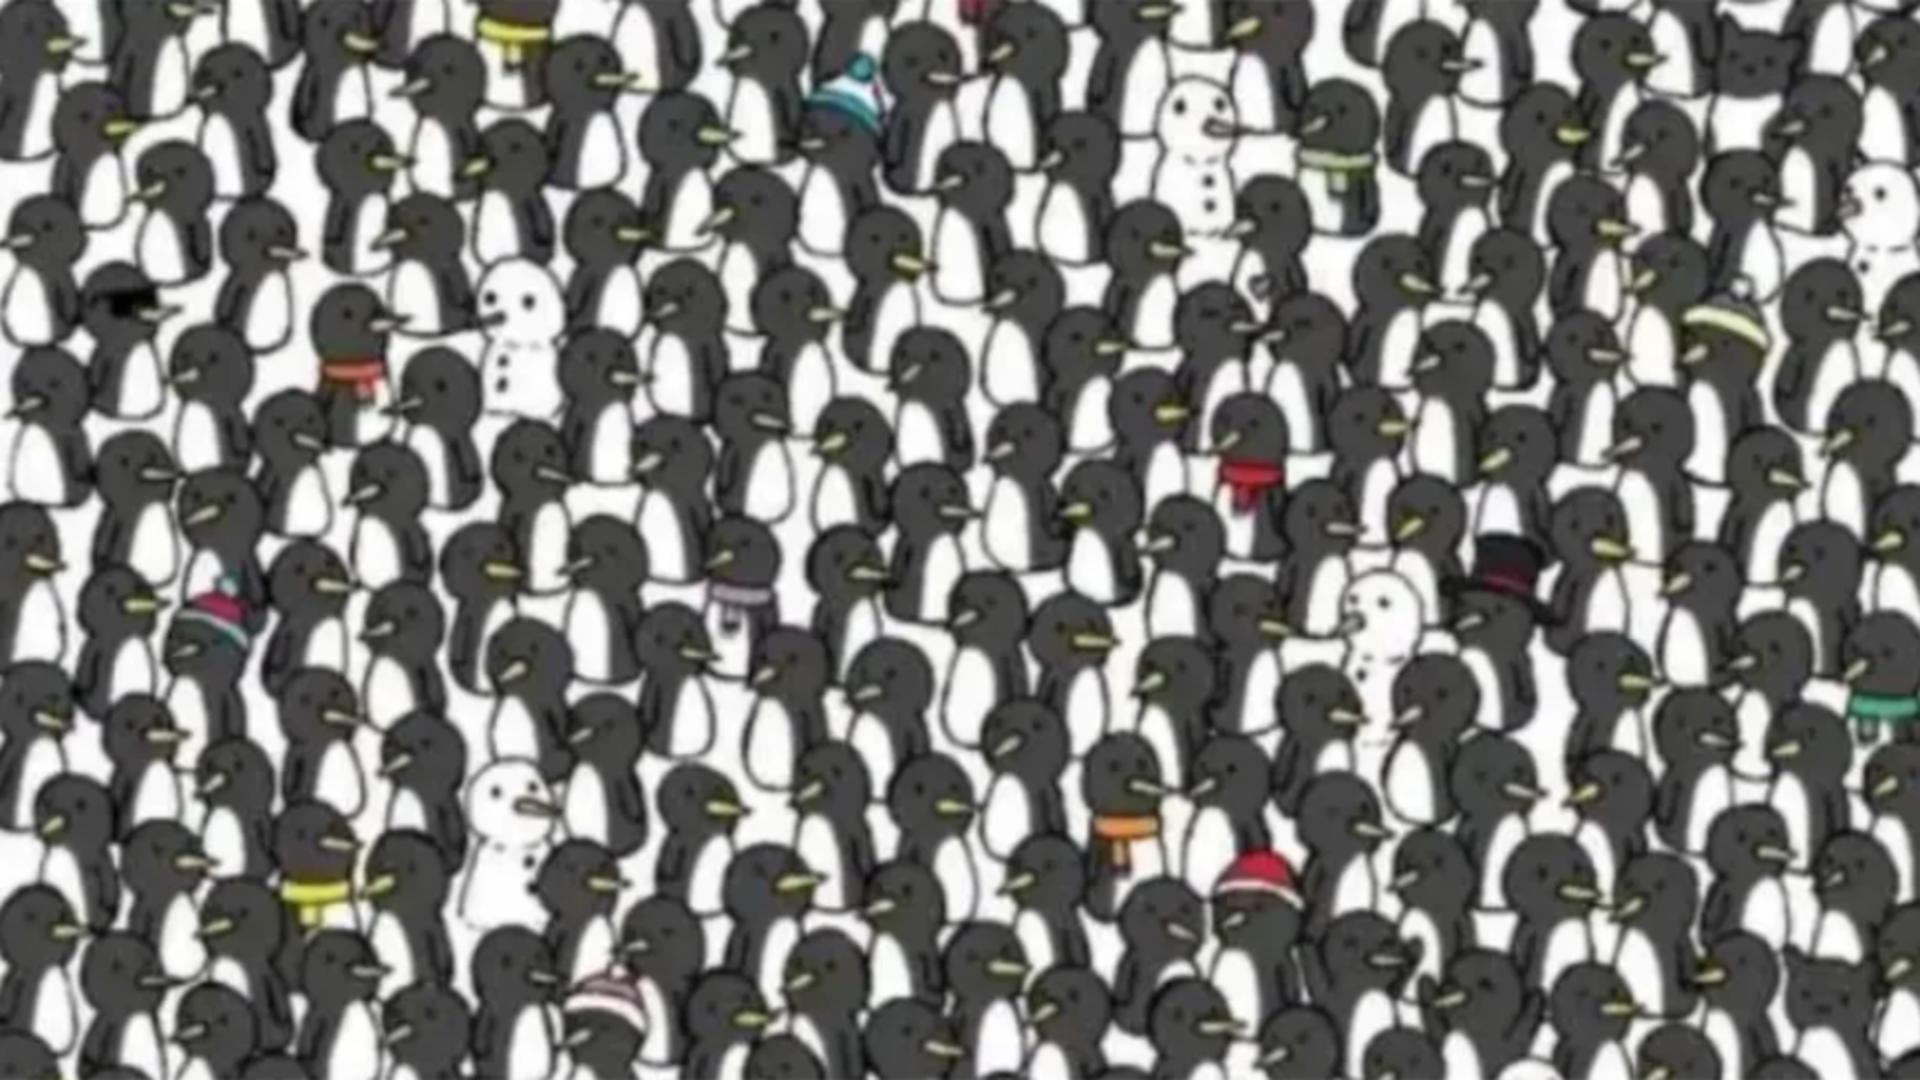 Testul detectivului suprem: Poți să găsești cele două pisici ascunse în mulțimea de pinguini? Numai geniile le găsesc în doar 10 secunde